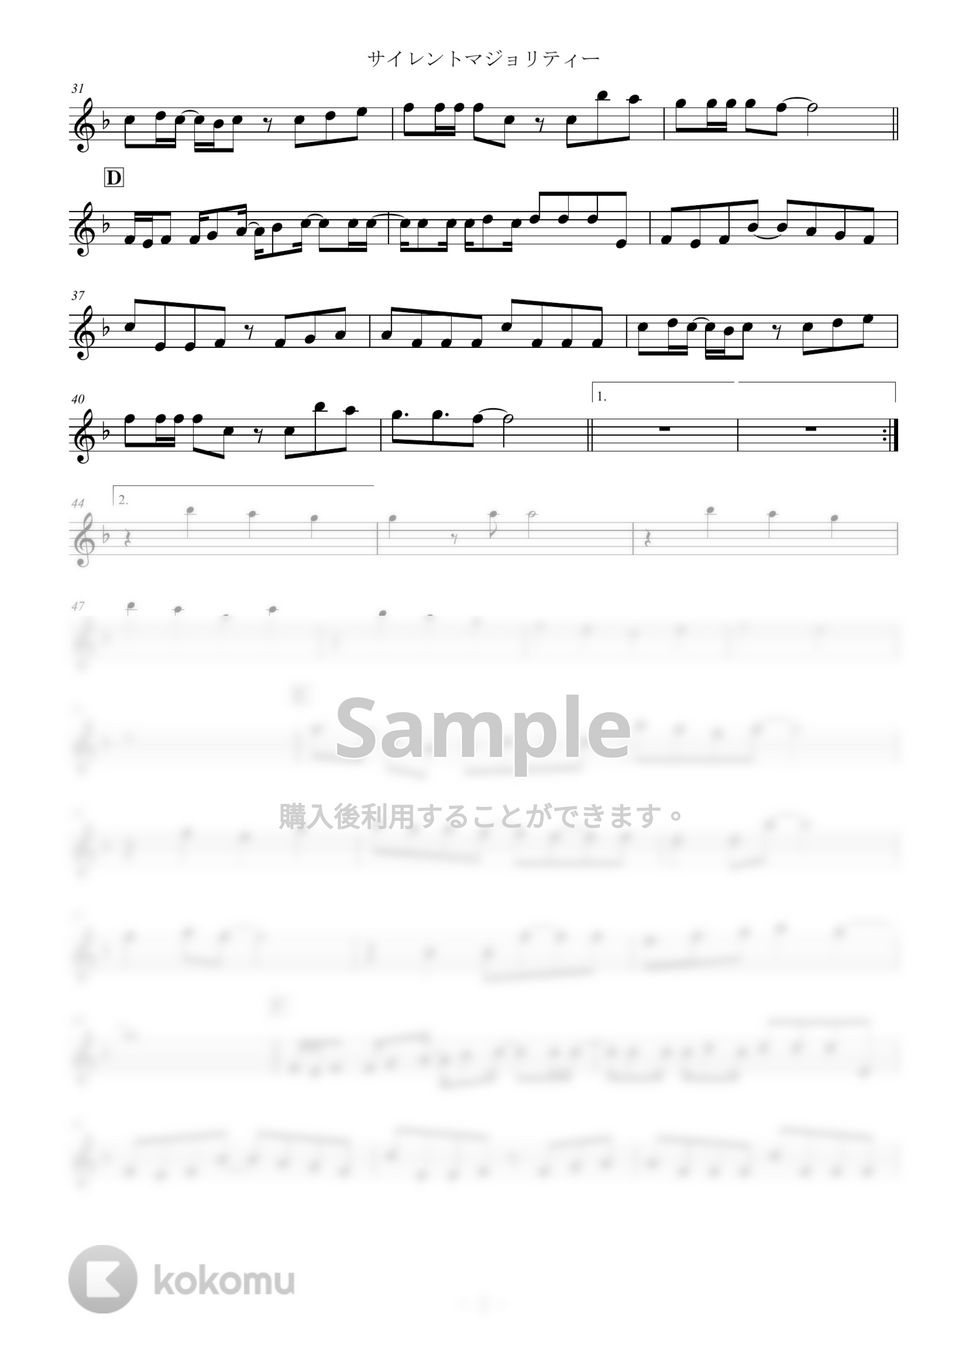 欅坂46 - サイレントマジョリティー (inE♭) by はまなす